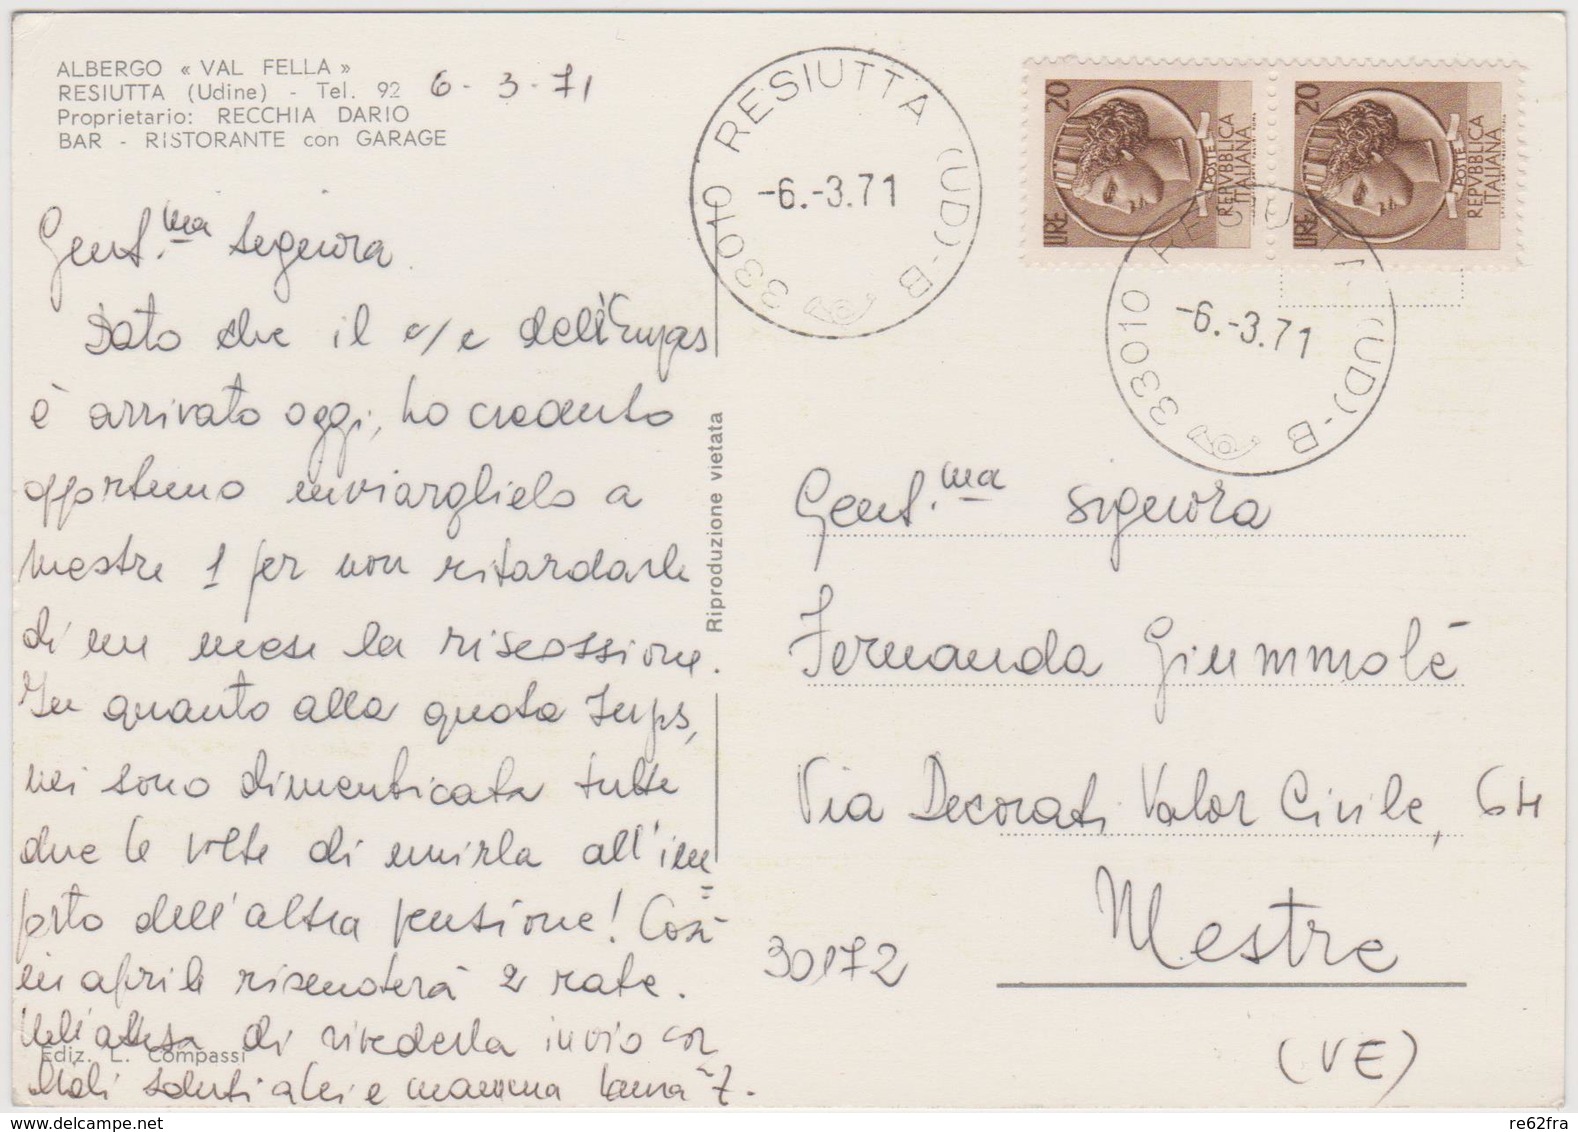 RESIUTTA   (UD) , Lotto 5 cartoline  - 1  f.p. e 4  F.G.  - anni  '1940/'1950